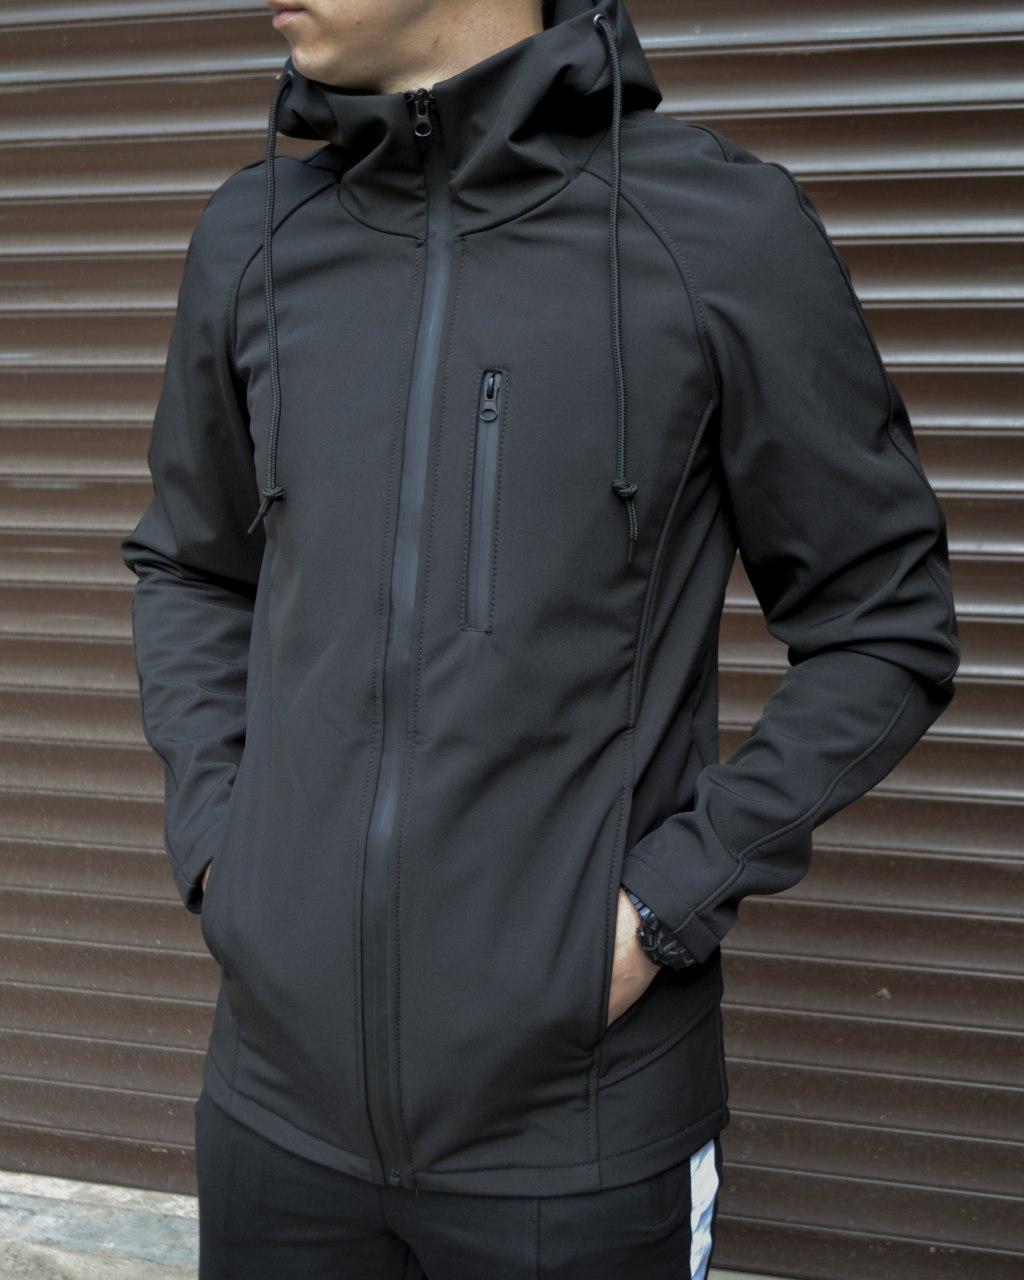 Куртка чоловіча чорна від бренду ТУР модель Ріктус (Rictus)